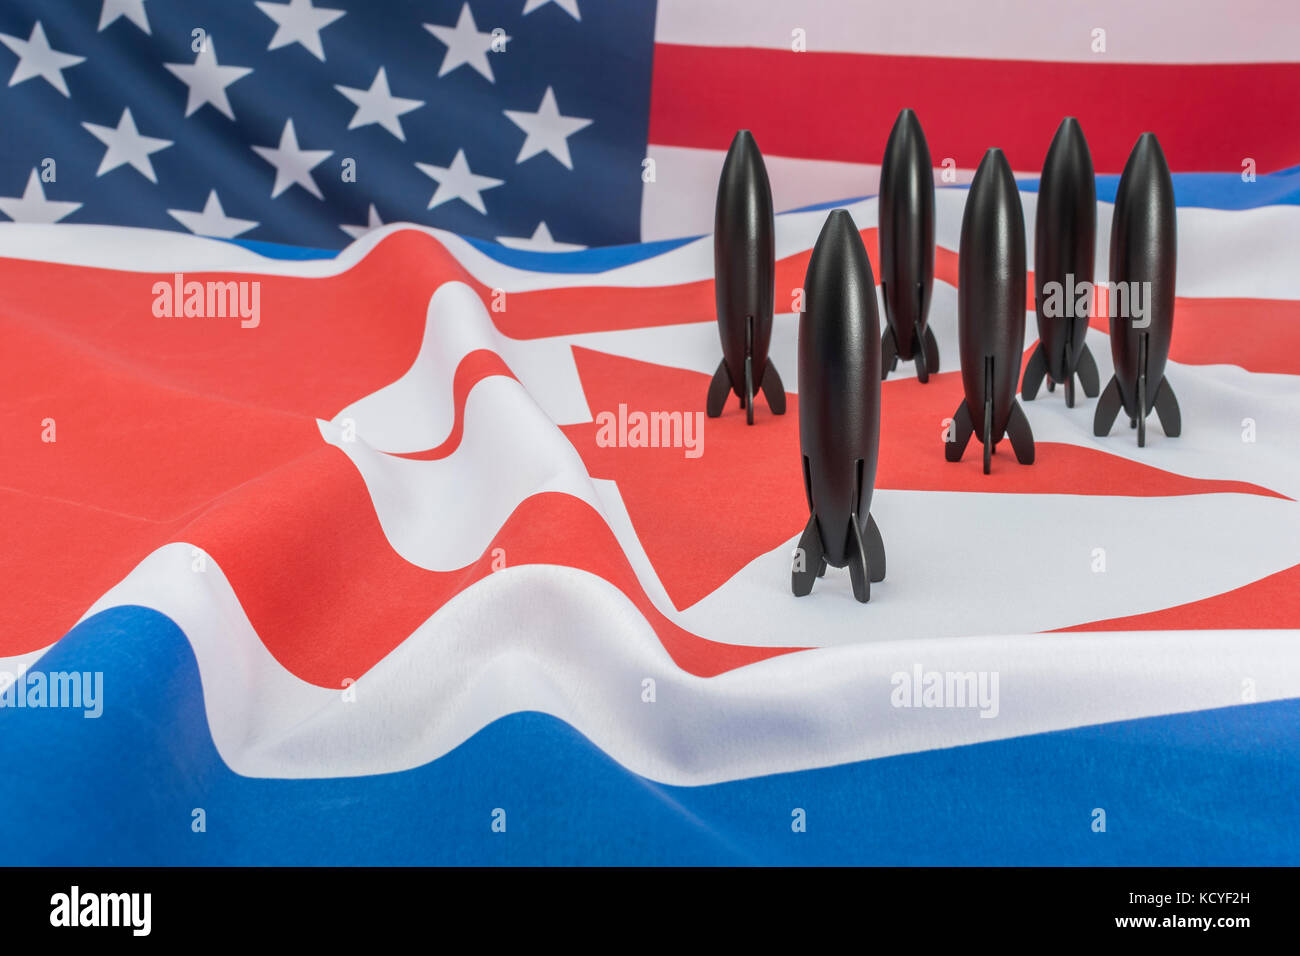 Toy Rocket + drapeau américain, drapeau nord-coréen - métaphore pour les sommets de la Corée du Nord, le sommet Trump NOKO / Kim Jong un, les armes nucléaires de la Corée du Nord. Banque D'Images